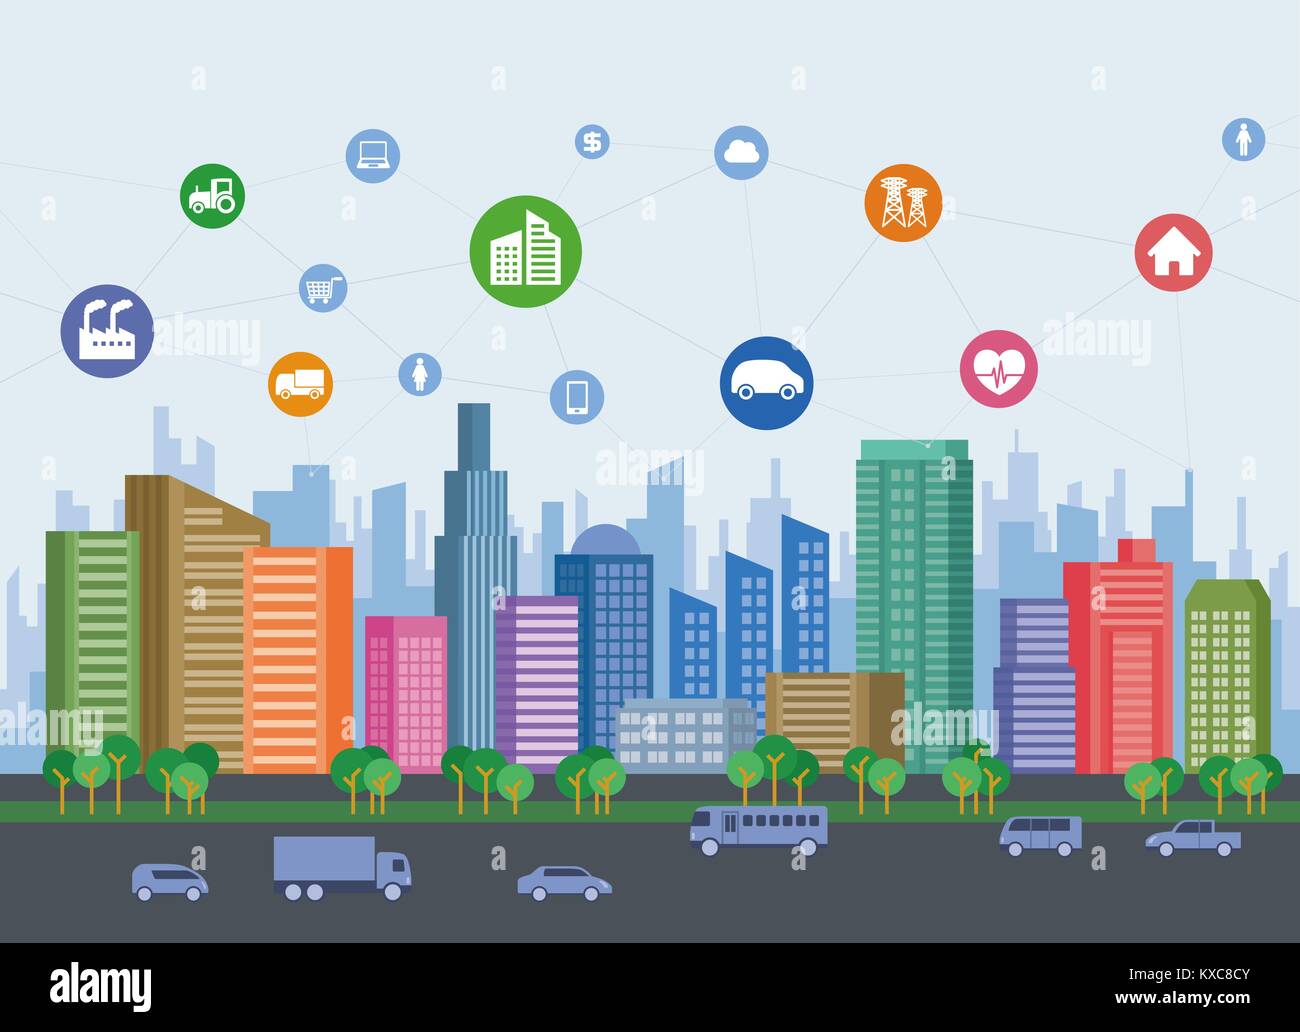 Smart city sur le sol avec différentes icônes technologiques futuristes, paysage urbain et de vie moderne, smart gird, IoT (Internet des objets). Illustration de Vecteur